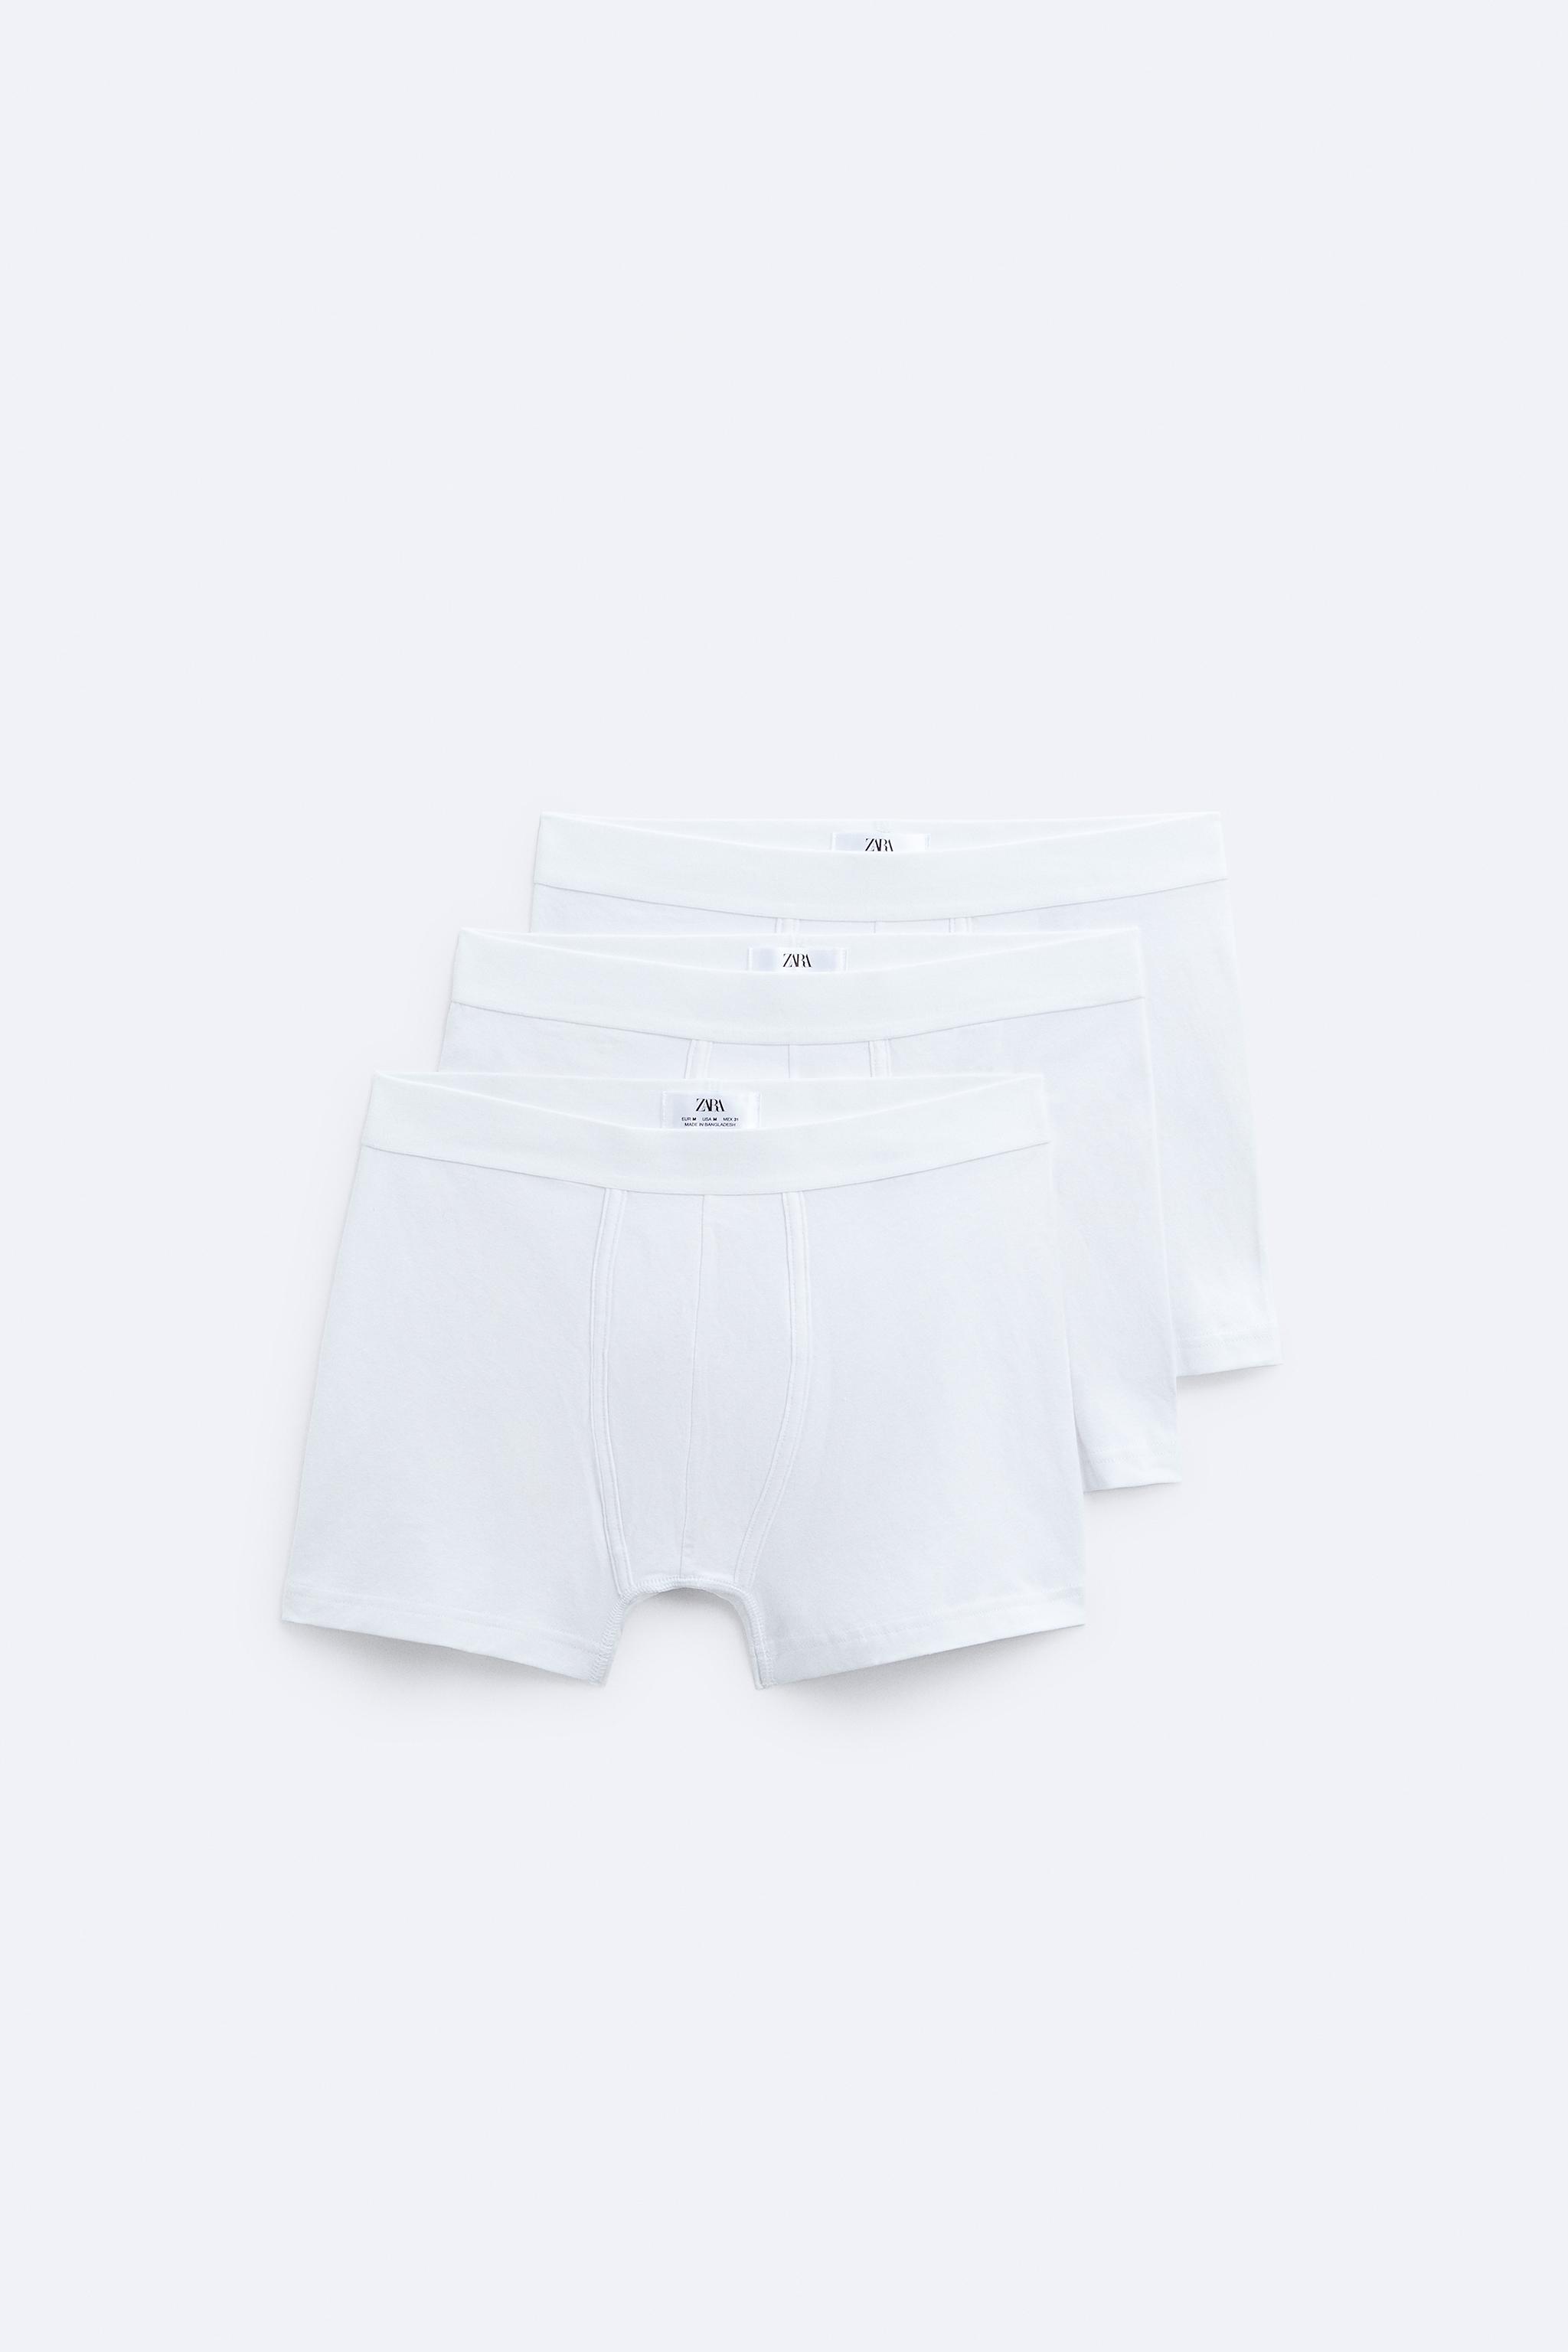 Zara Man  Men and underwear